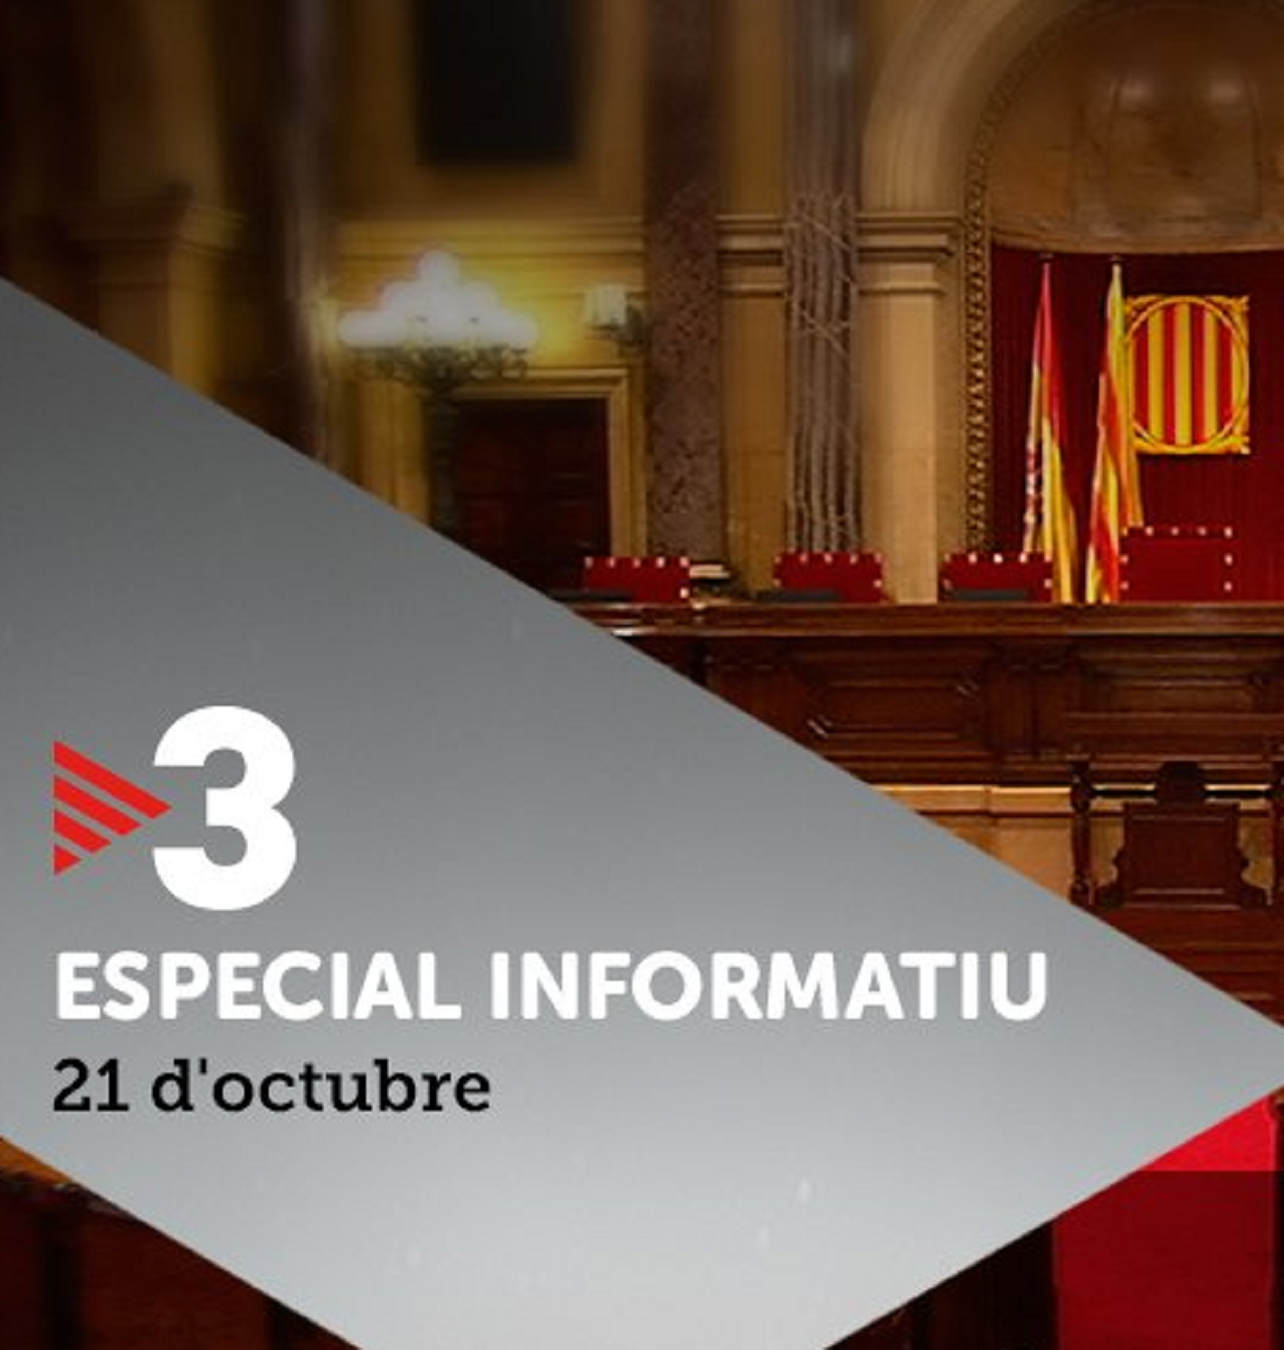 La CCMA responde a la intervención de TV3 y Catalunya Radio: "Mantendremos un servicio de calidad"